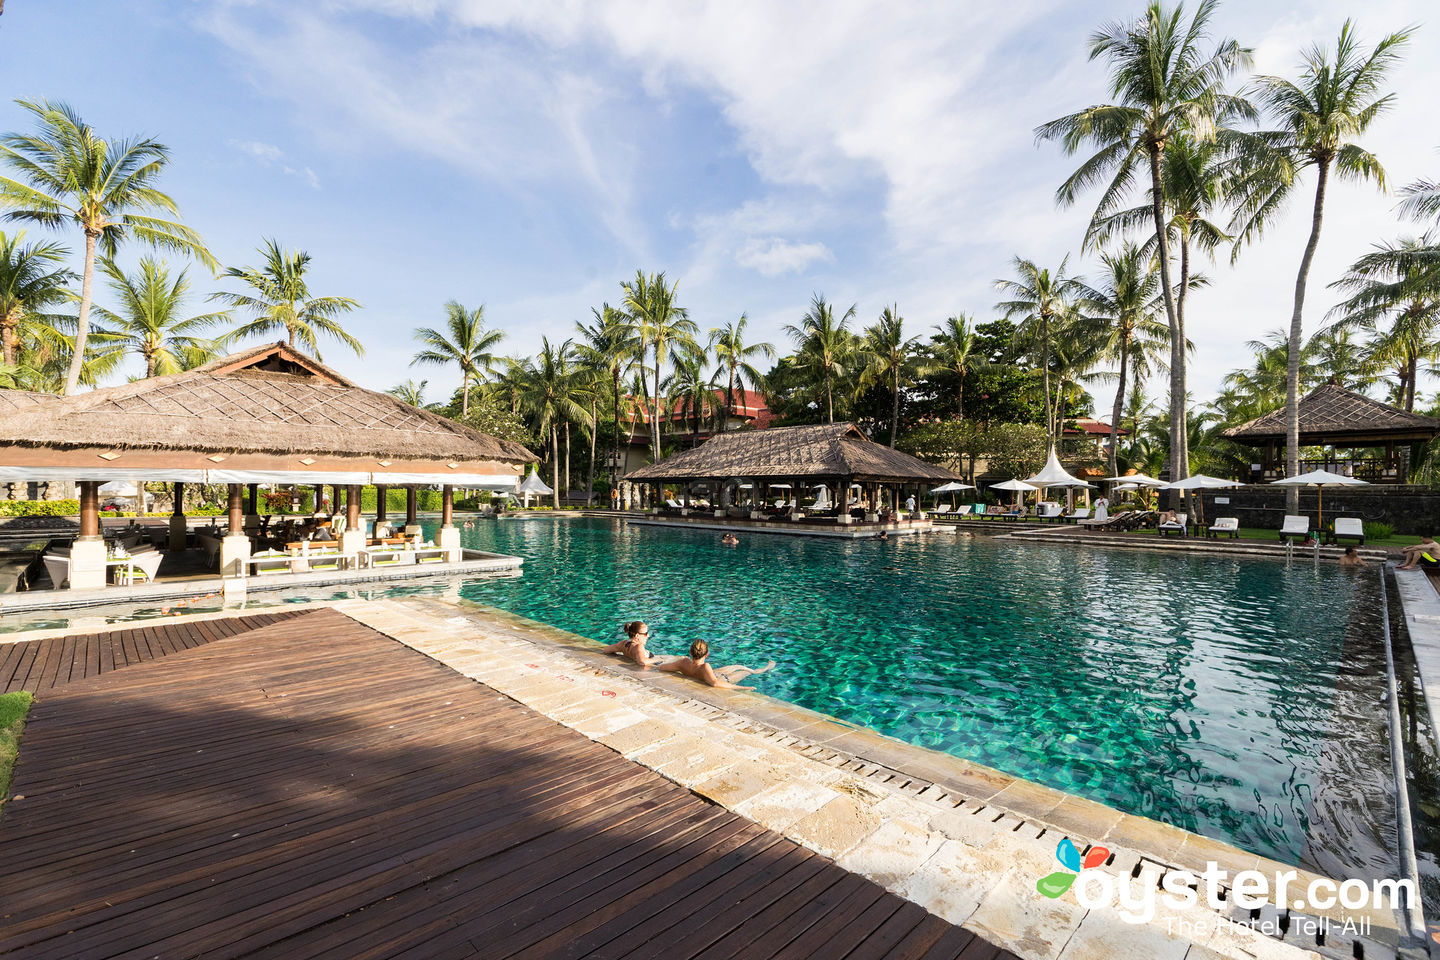 InterContinental Bali Resort – балийская архитектура и высочайший уровень сервиса на берегу Индийского океана